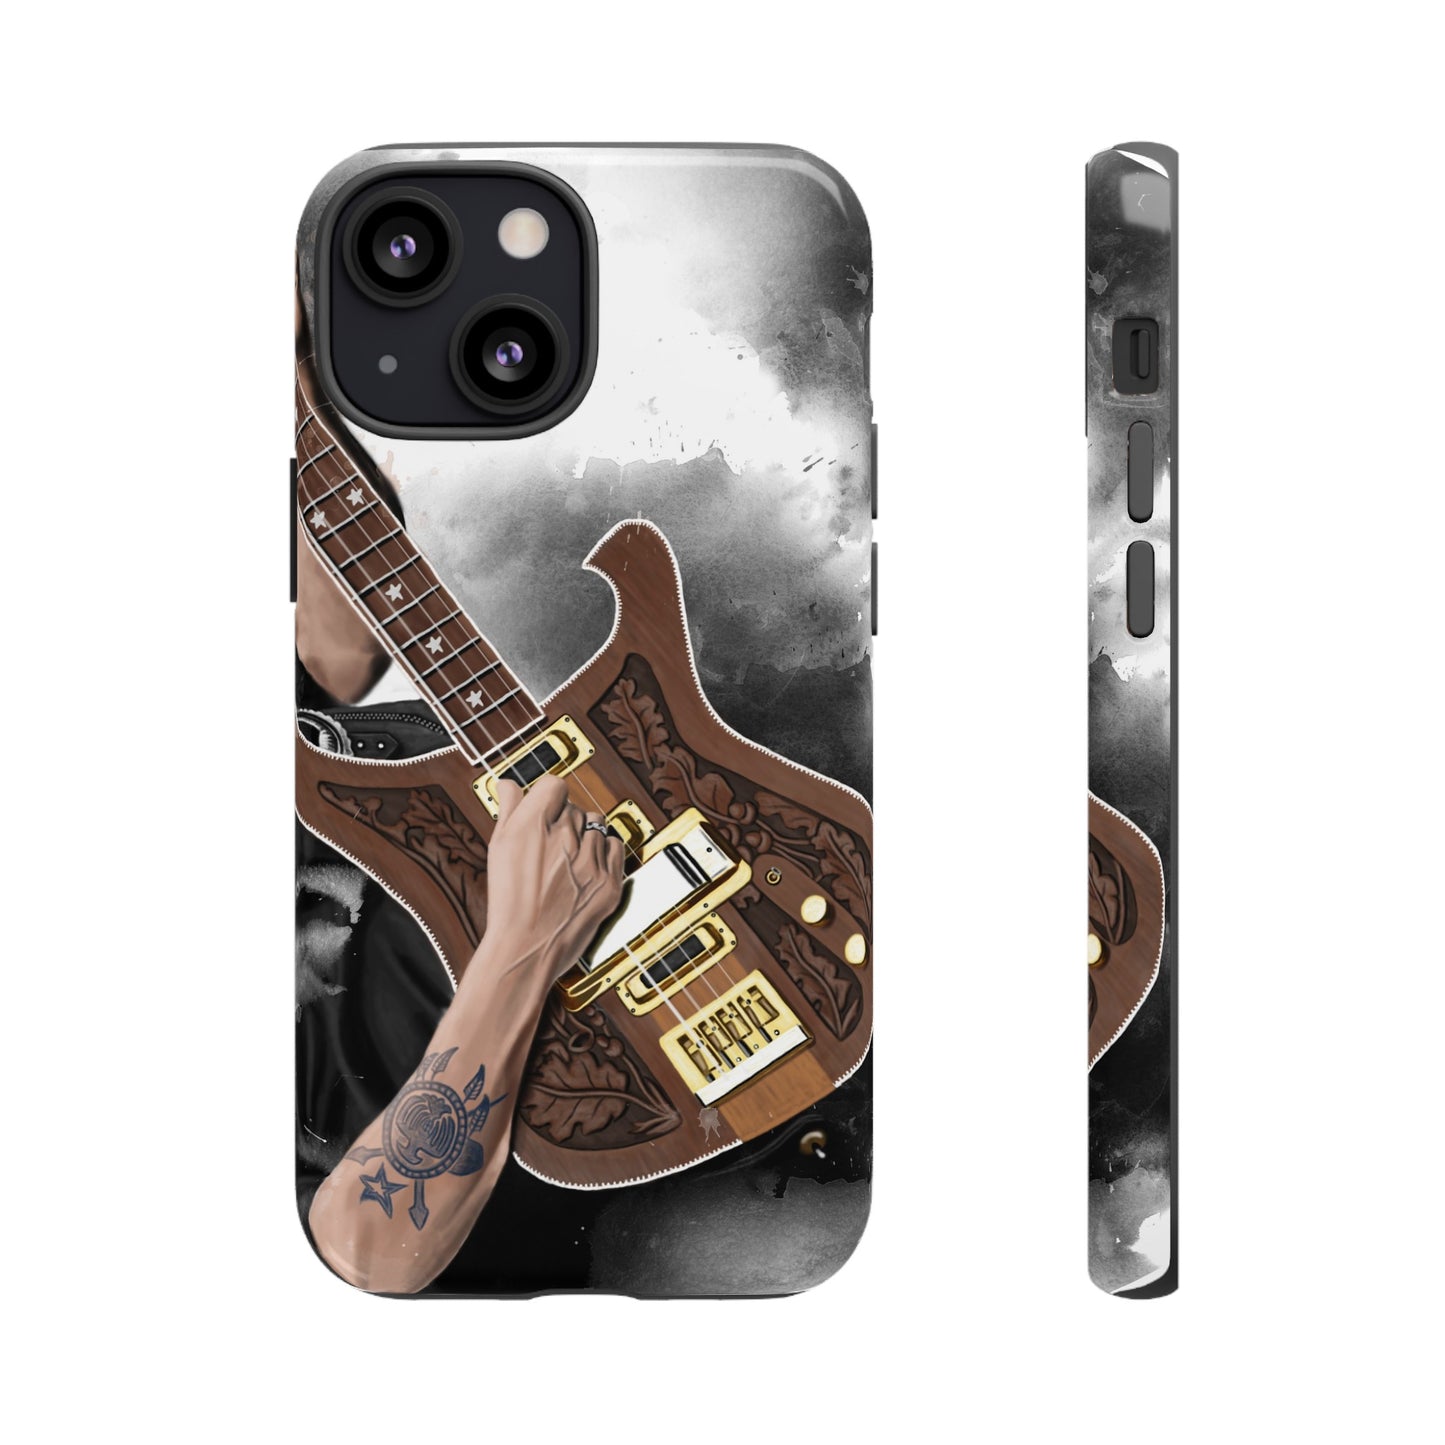 Lemmy's Bass Guitar Art On Tough Phone Cases